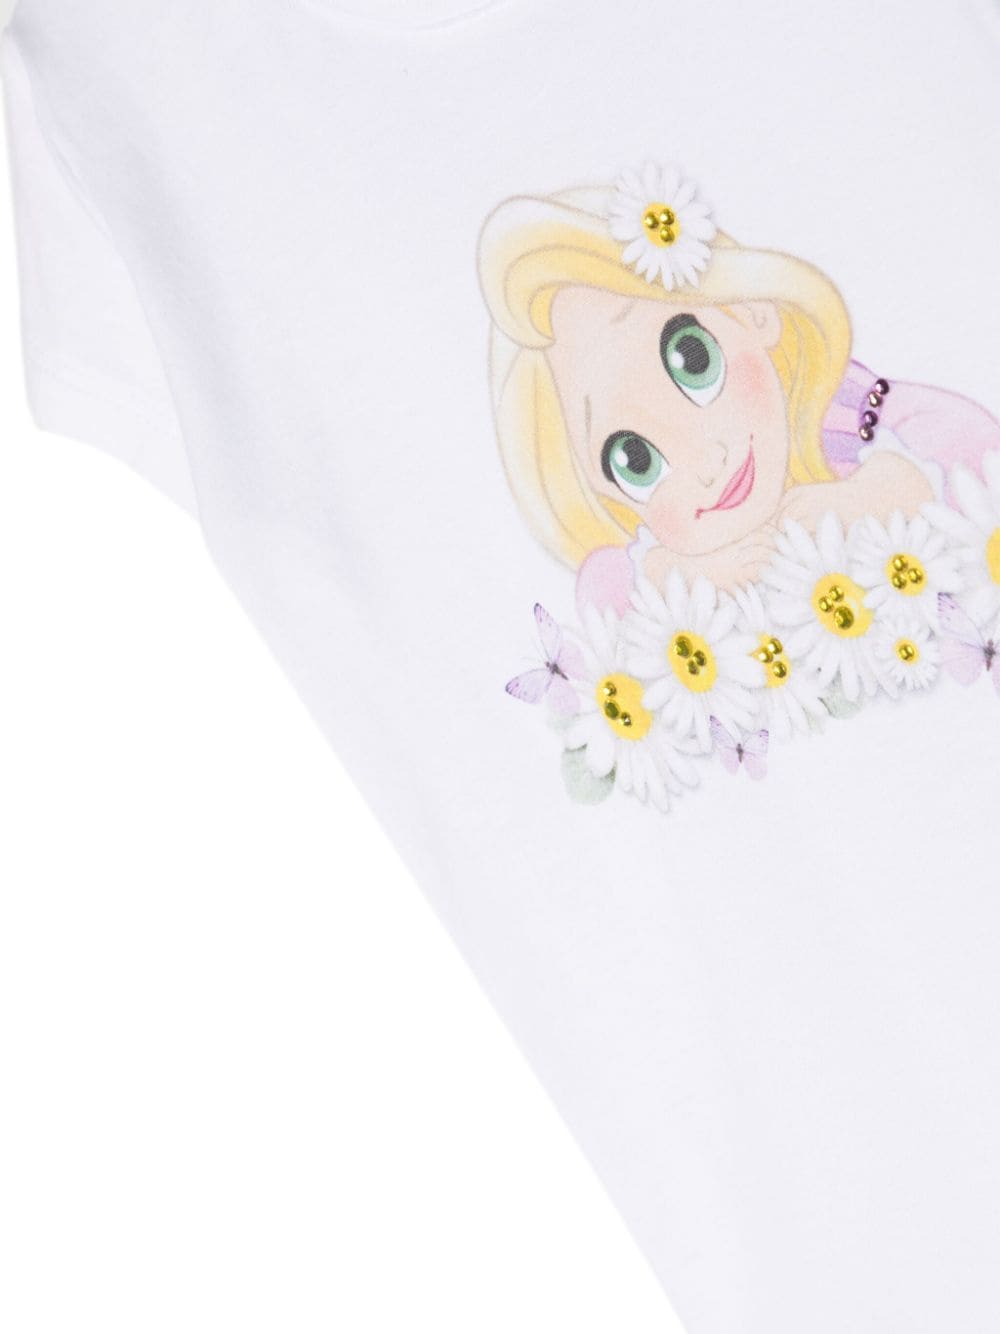 T-shirts neonata bianca/multicolore